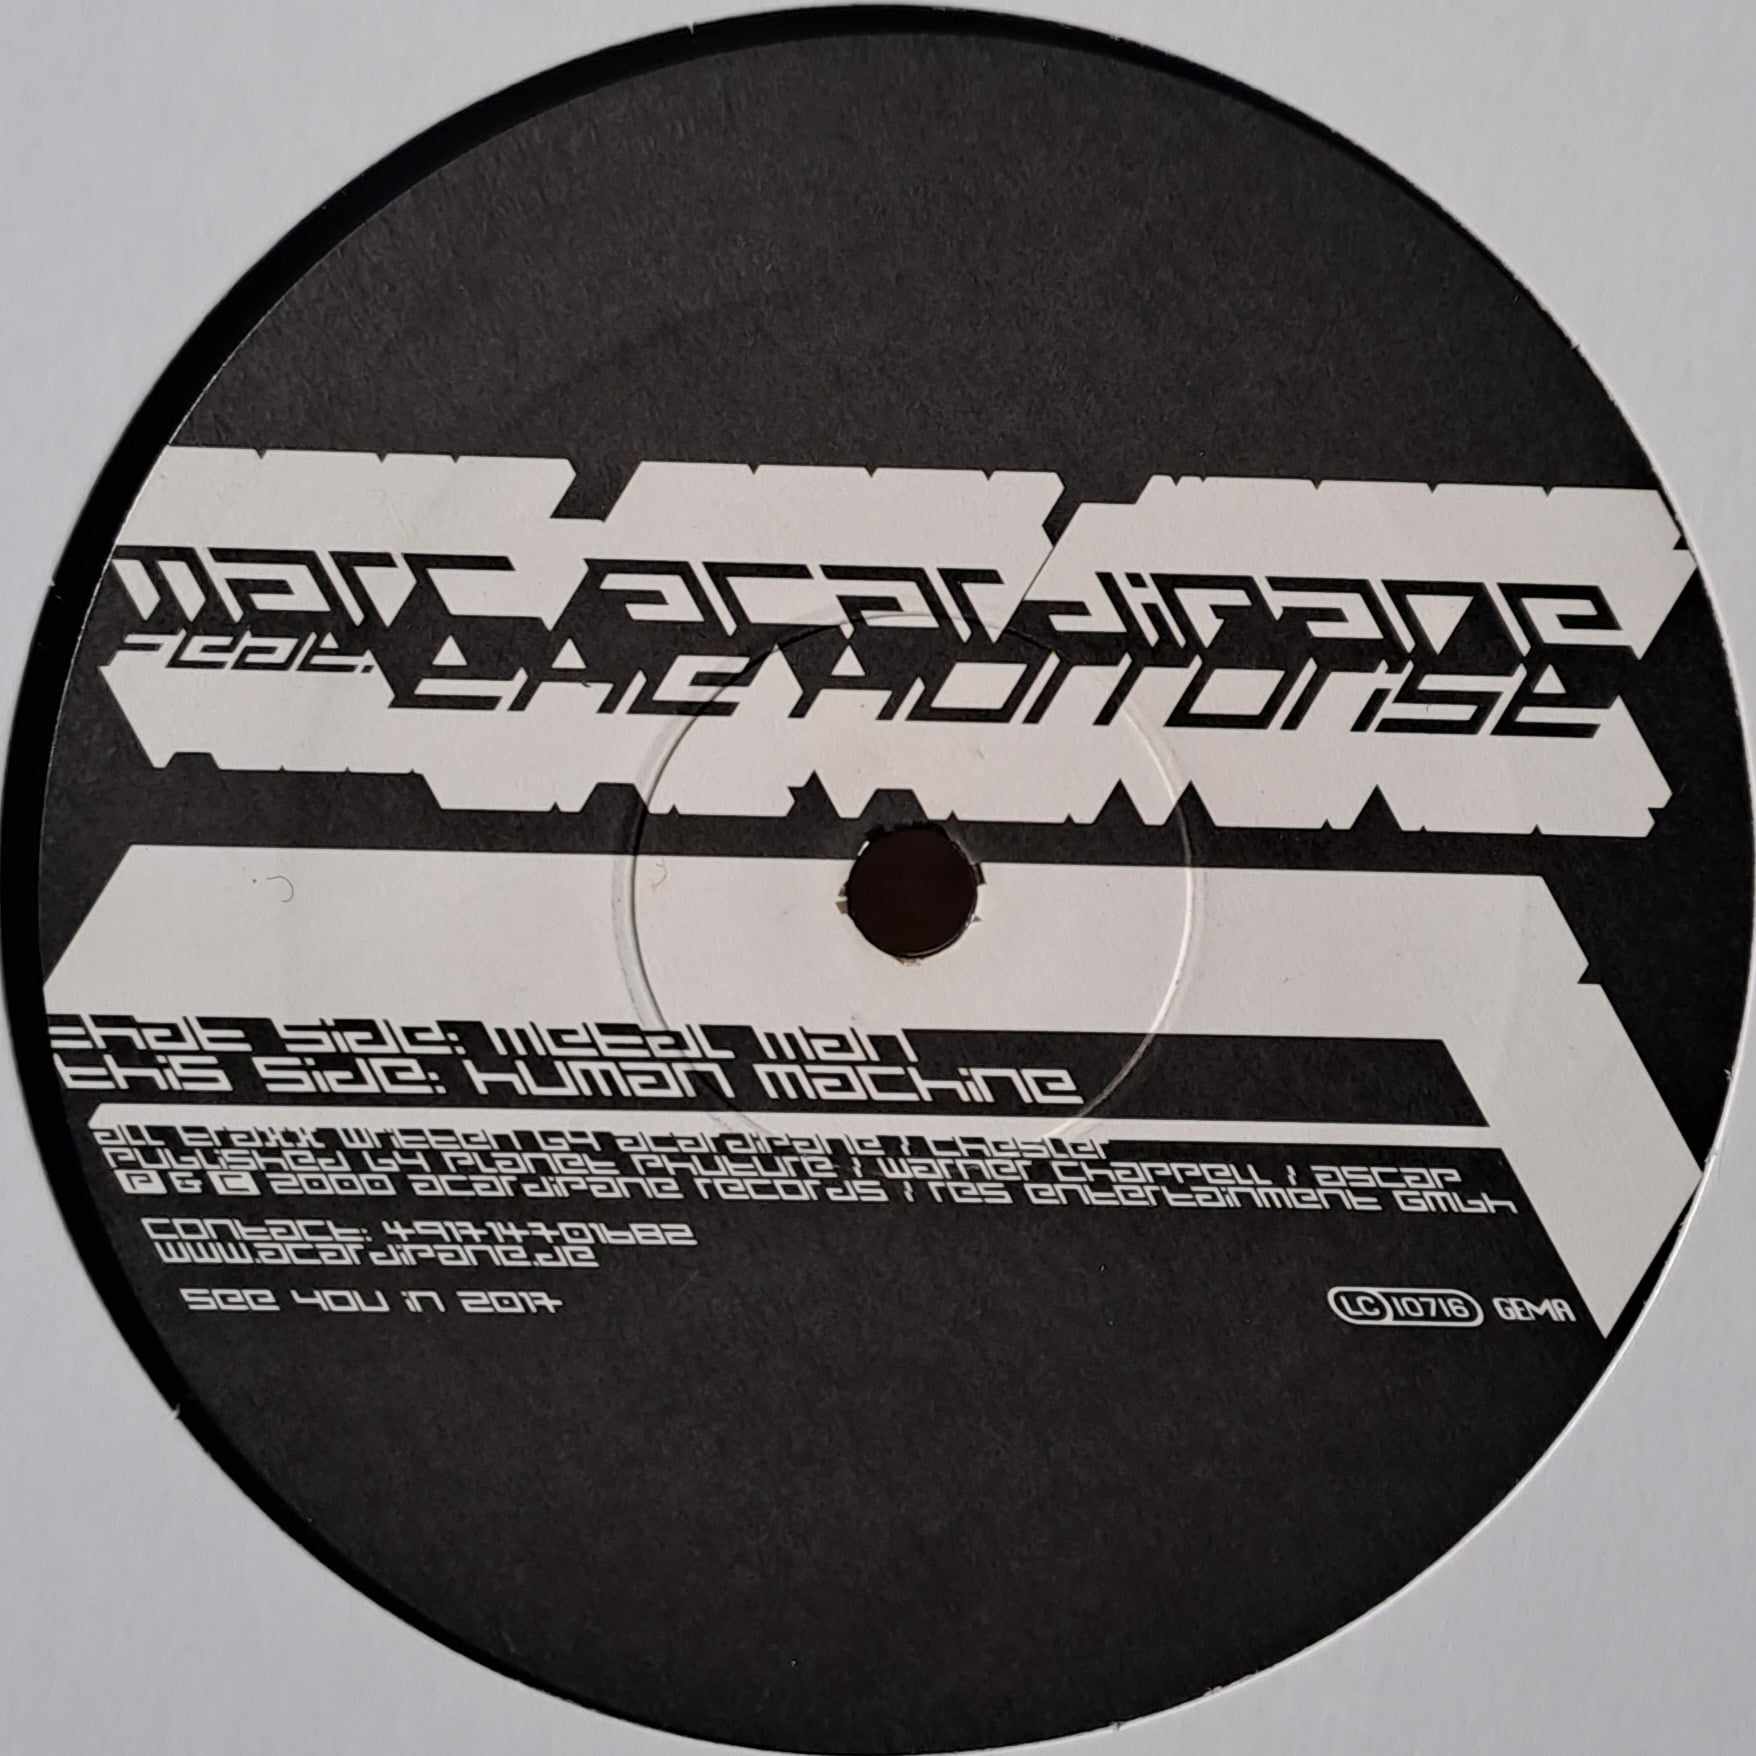 Acardipane Records 012 12 - vinyle hardcore